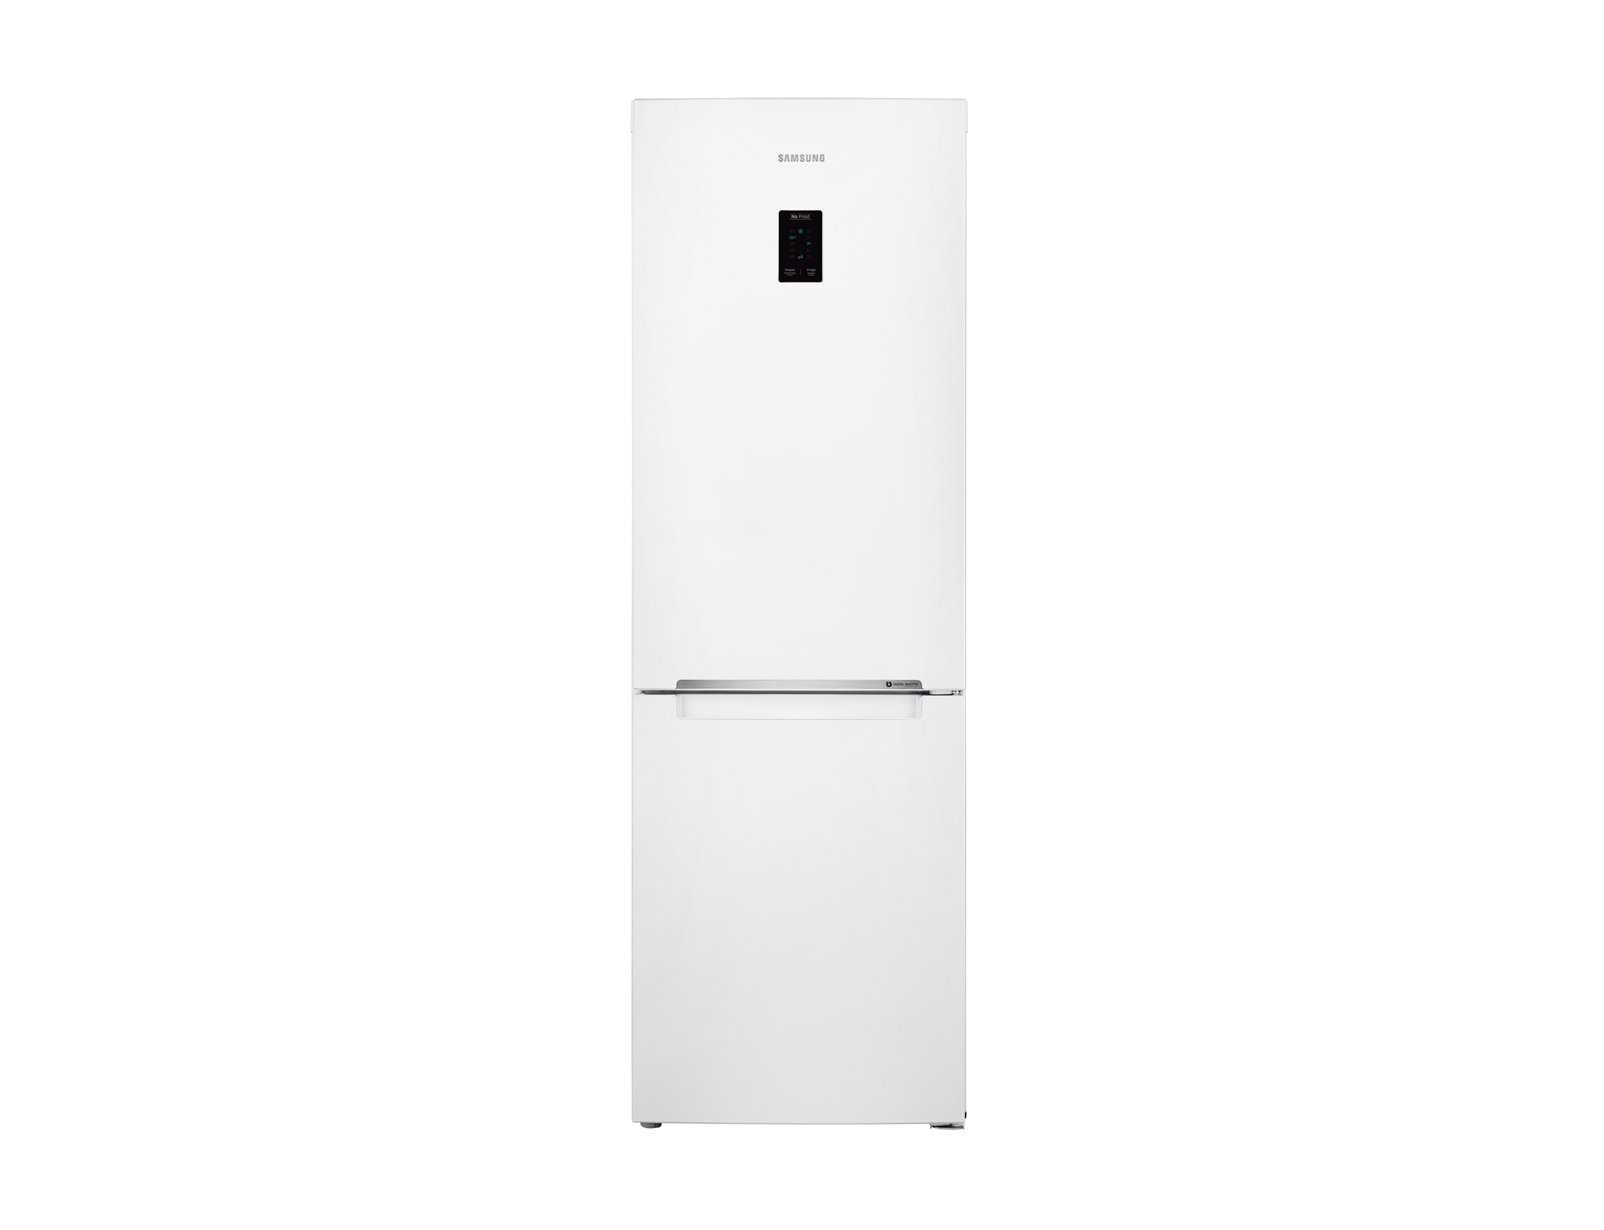 Холодильники samsung: рейтинг топ-7 моделей + отзывы, советы по выбору